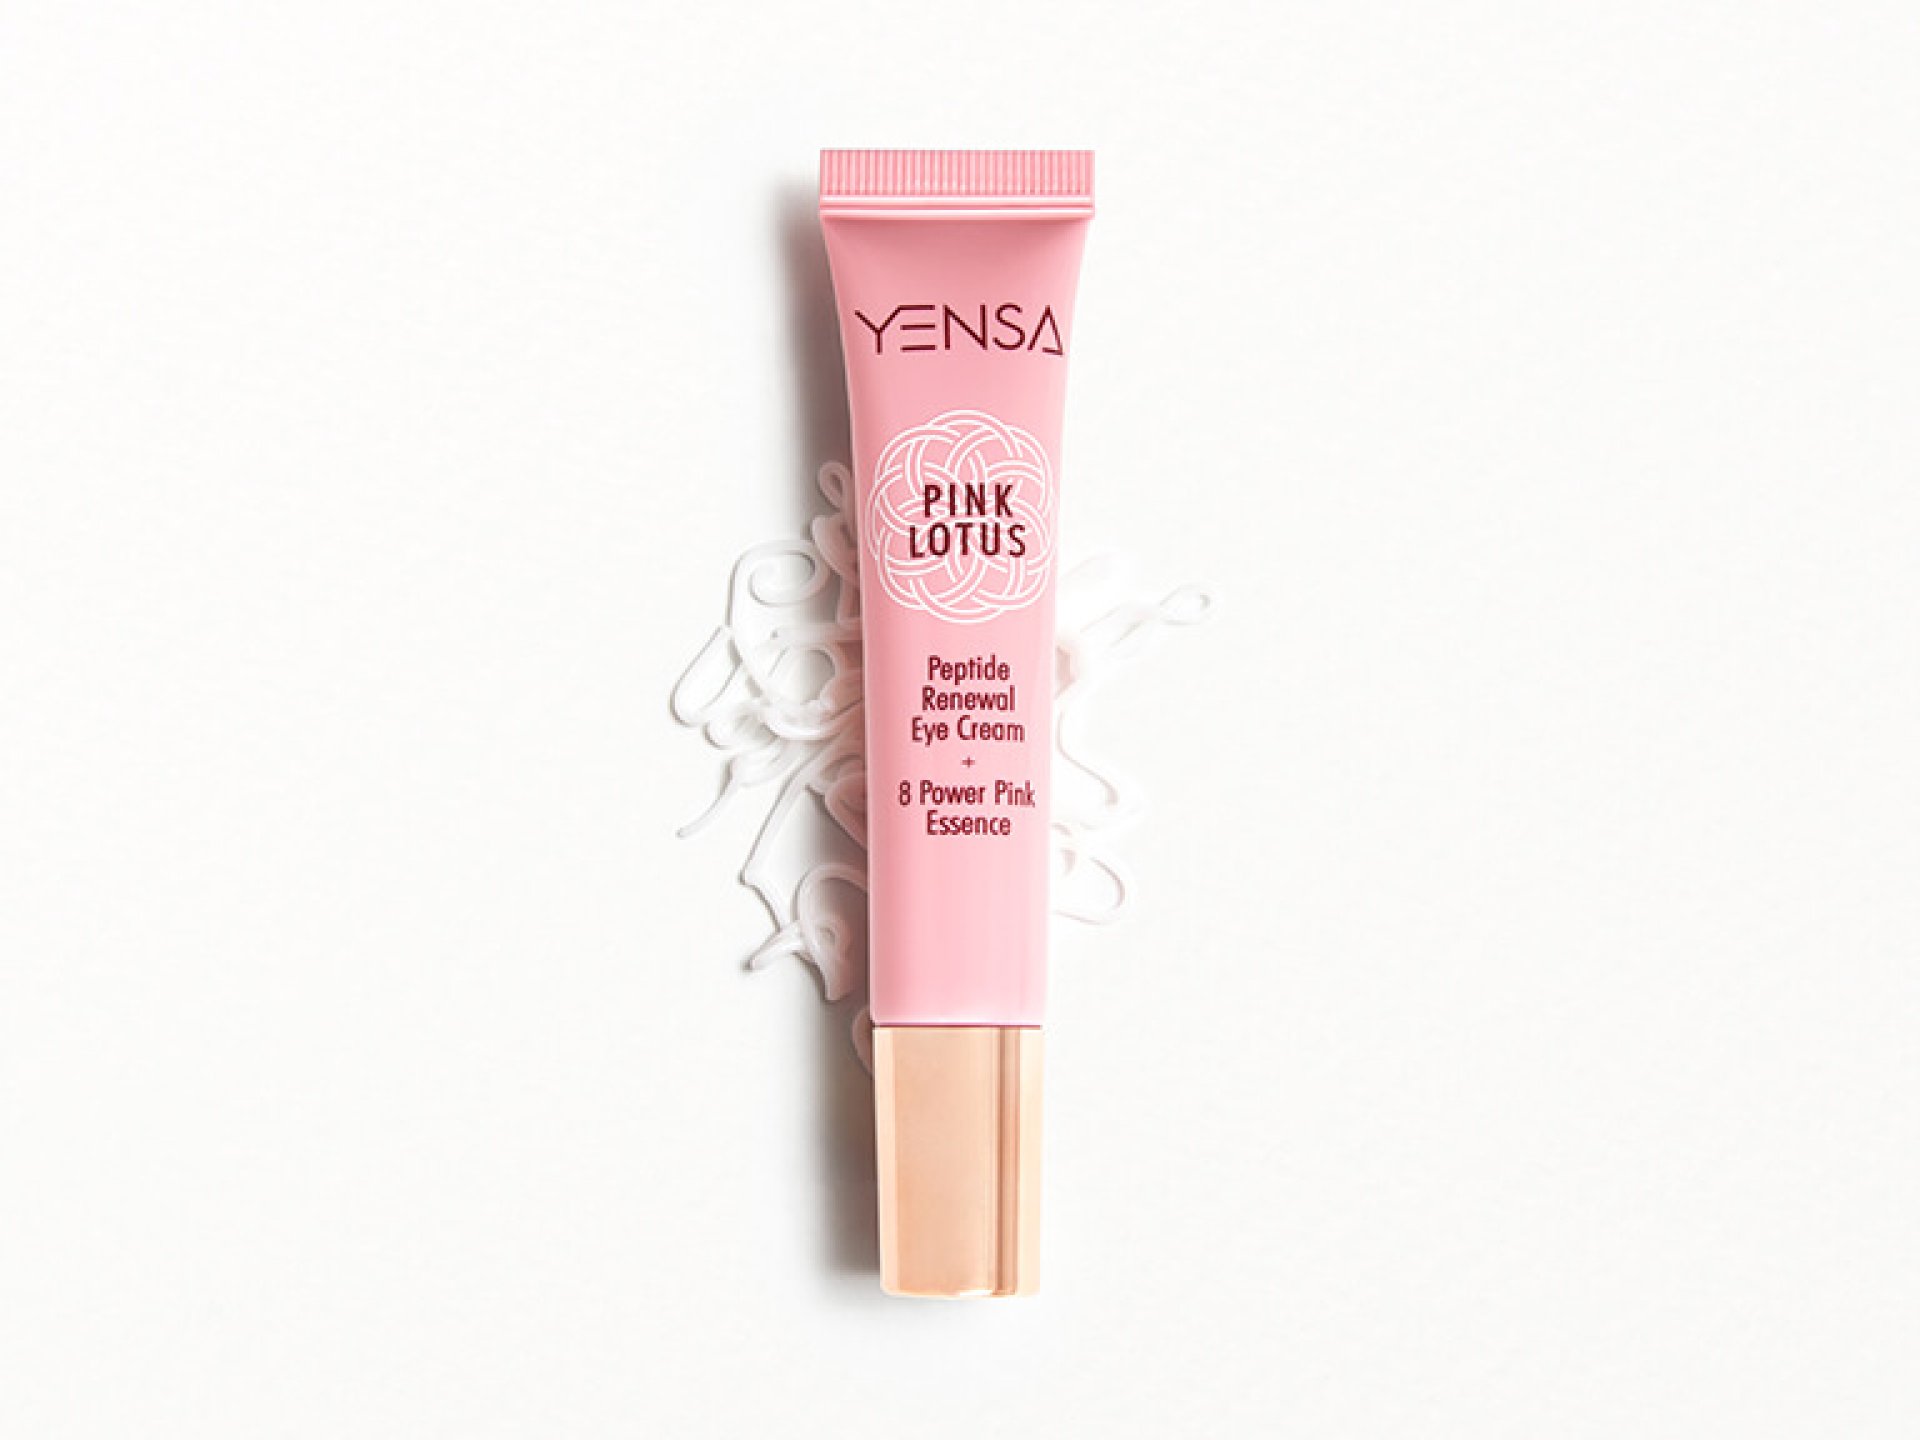 YENSA PINK LOTUS Peptide Renewal Eye Cream